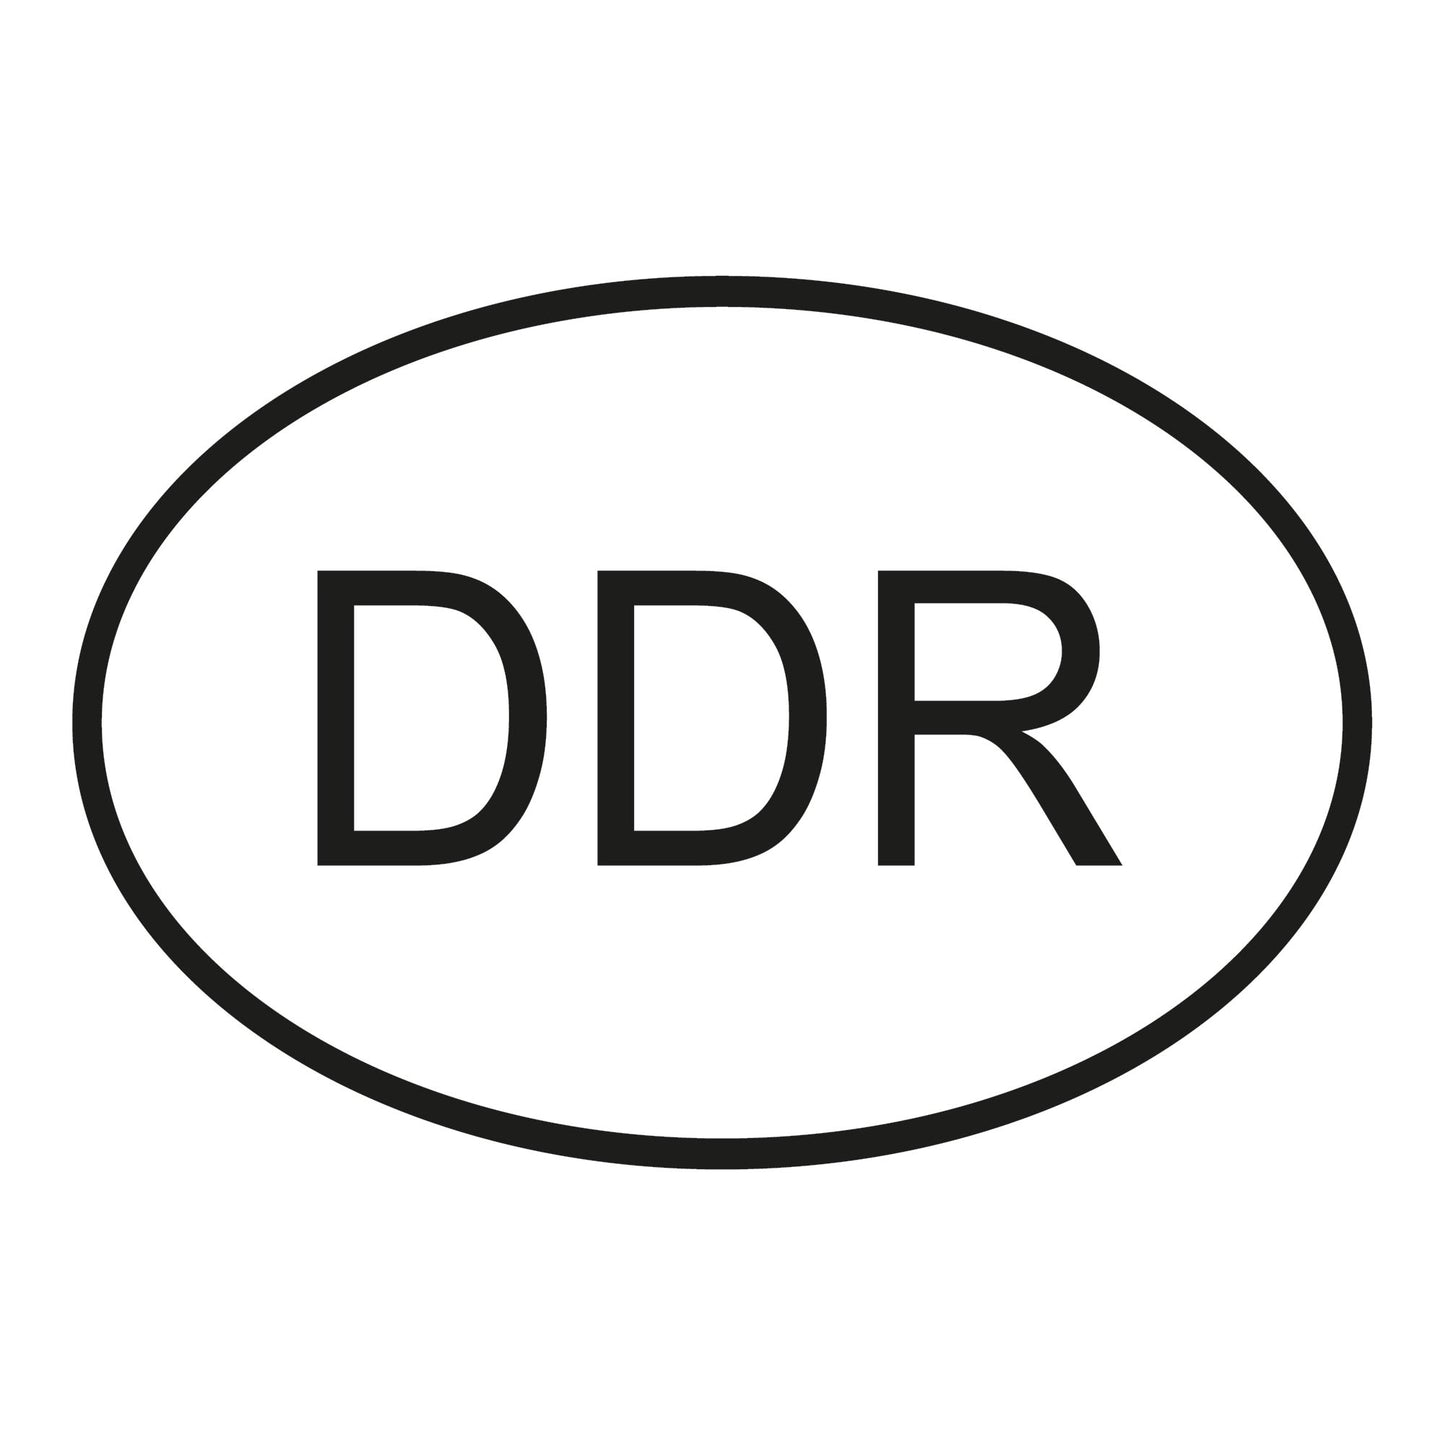 Autoaufkleber - DDR - 160cx110 mm